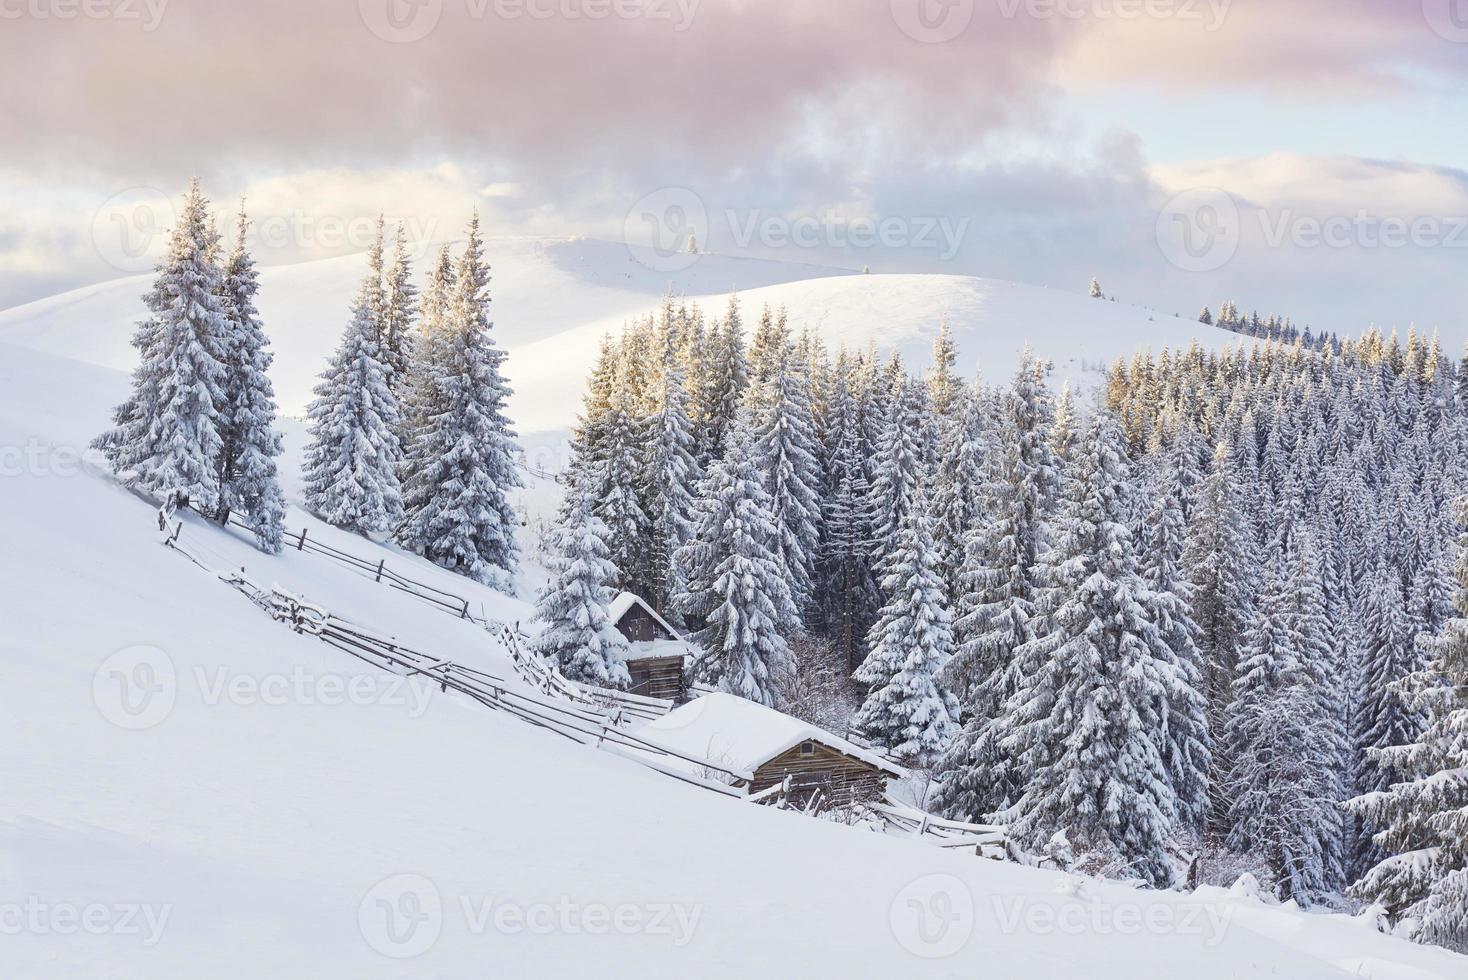 majestätiska vita granar som lyser av solljus. pittoresk och vacker vinterscen. plats plats karpaterna nationalpark, ukraina, europa. skidorten alperna. blå toning. gott nytt år skönhetsvärlden foto